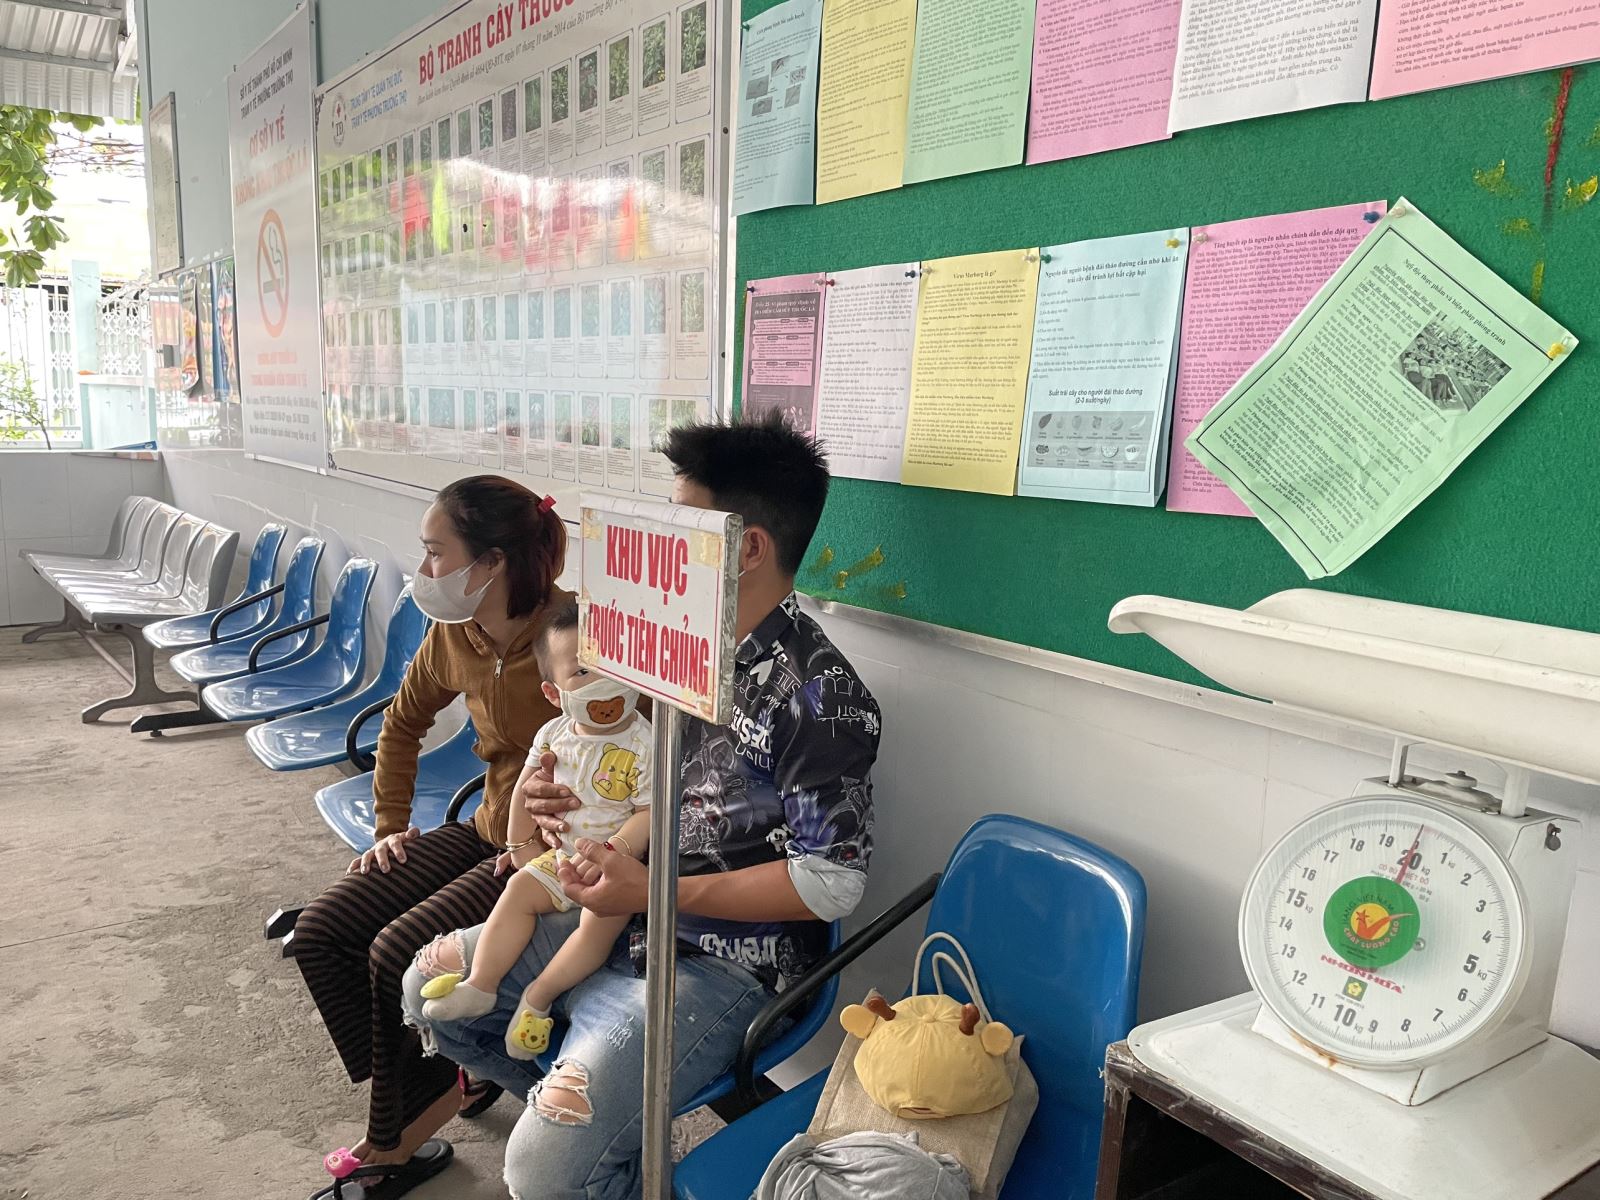 Thiếu vaccine, TP Hồ Chí Minh đứng trước nguy cơ bùng phát nhiều dịch bệnh - Ảnh 2.